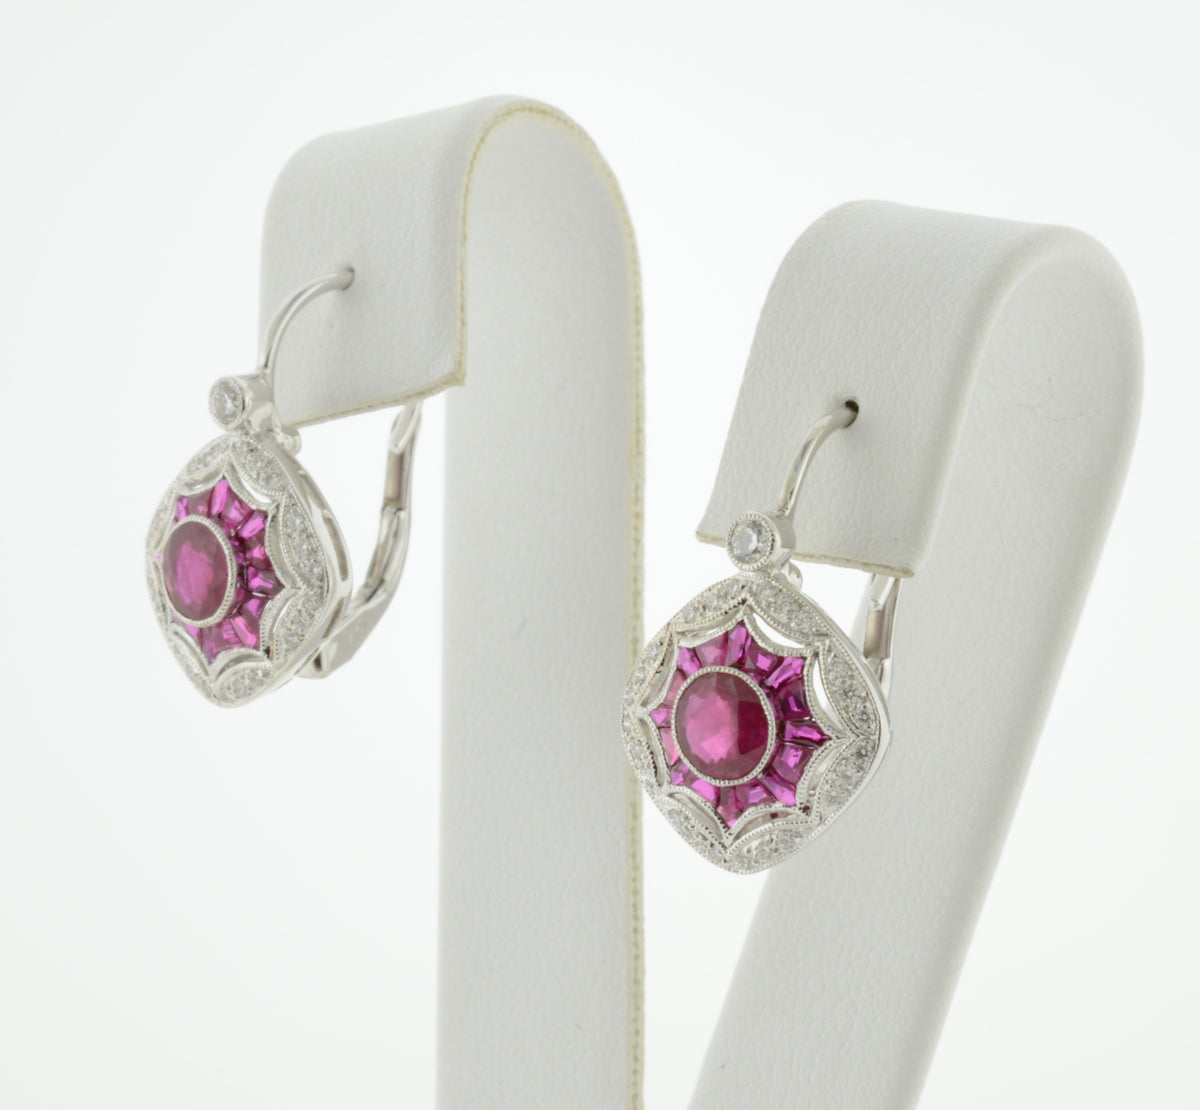 18K White Gold Art Deco Inspired Ruby and Diamond Earrings